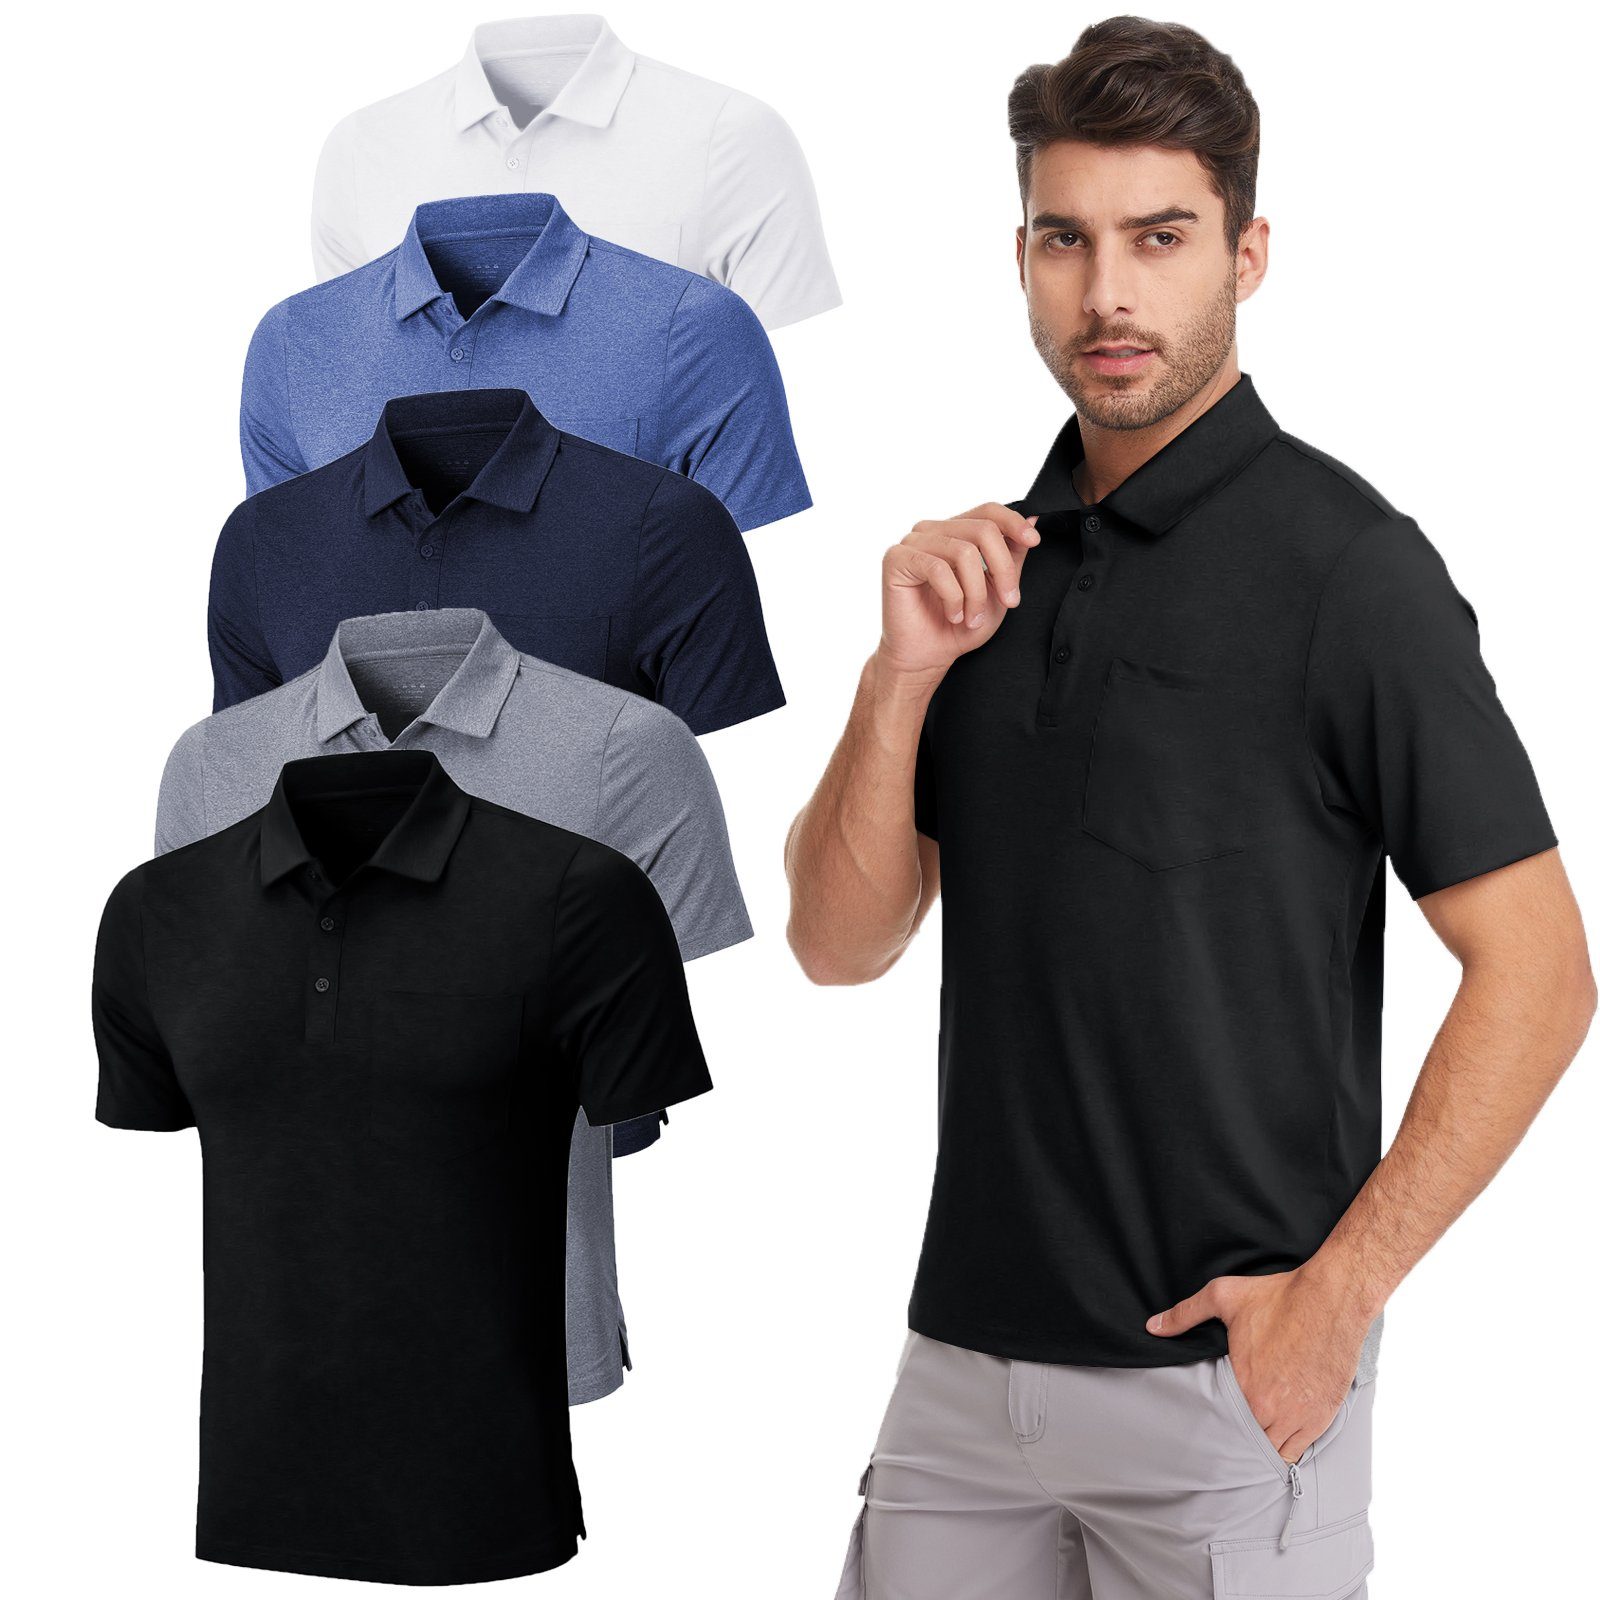 MEETYOO Poloshirt Herren Poloshirt Polohemd (Kurzarm T-Shirt, Classic Tee Hemd) Unifarben, Casual, Button-Down-Kragen, Atmungsaktiv Schwarz